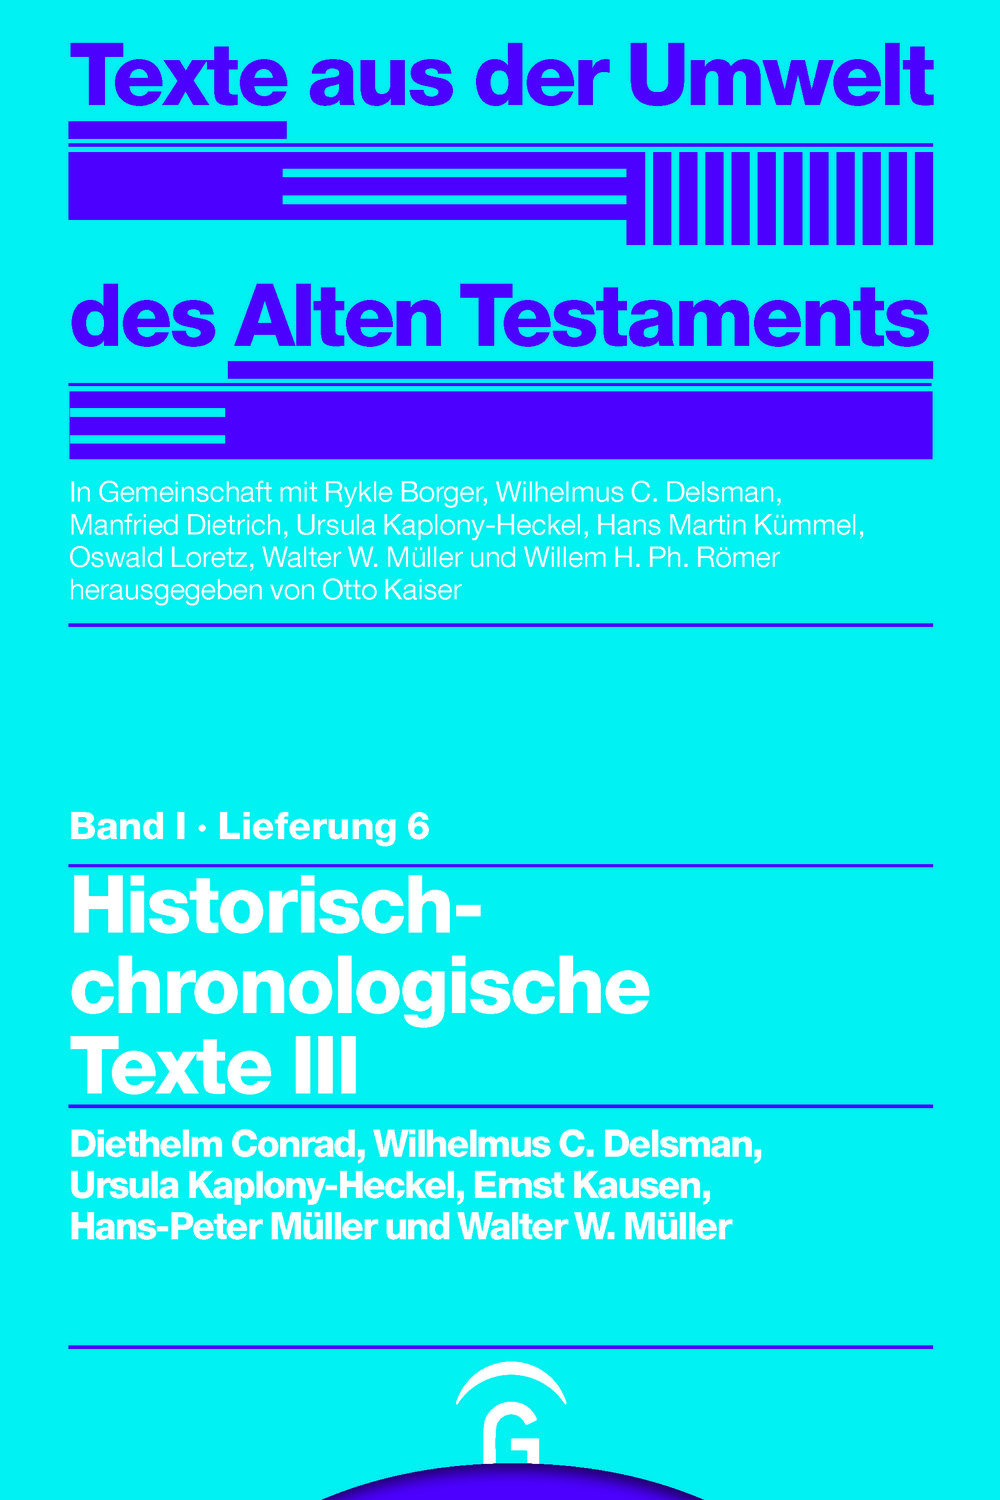 Historisch-chronologische Texte III - Diethelm Conrad, Wilhelmus C. Delsman, Ursula Kaplony-Heckel, Ernst Kausen, Hans-Peter Müller, Walter W. Müller